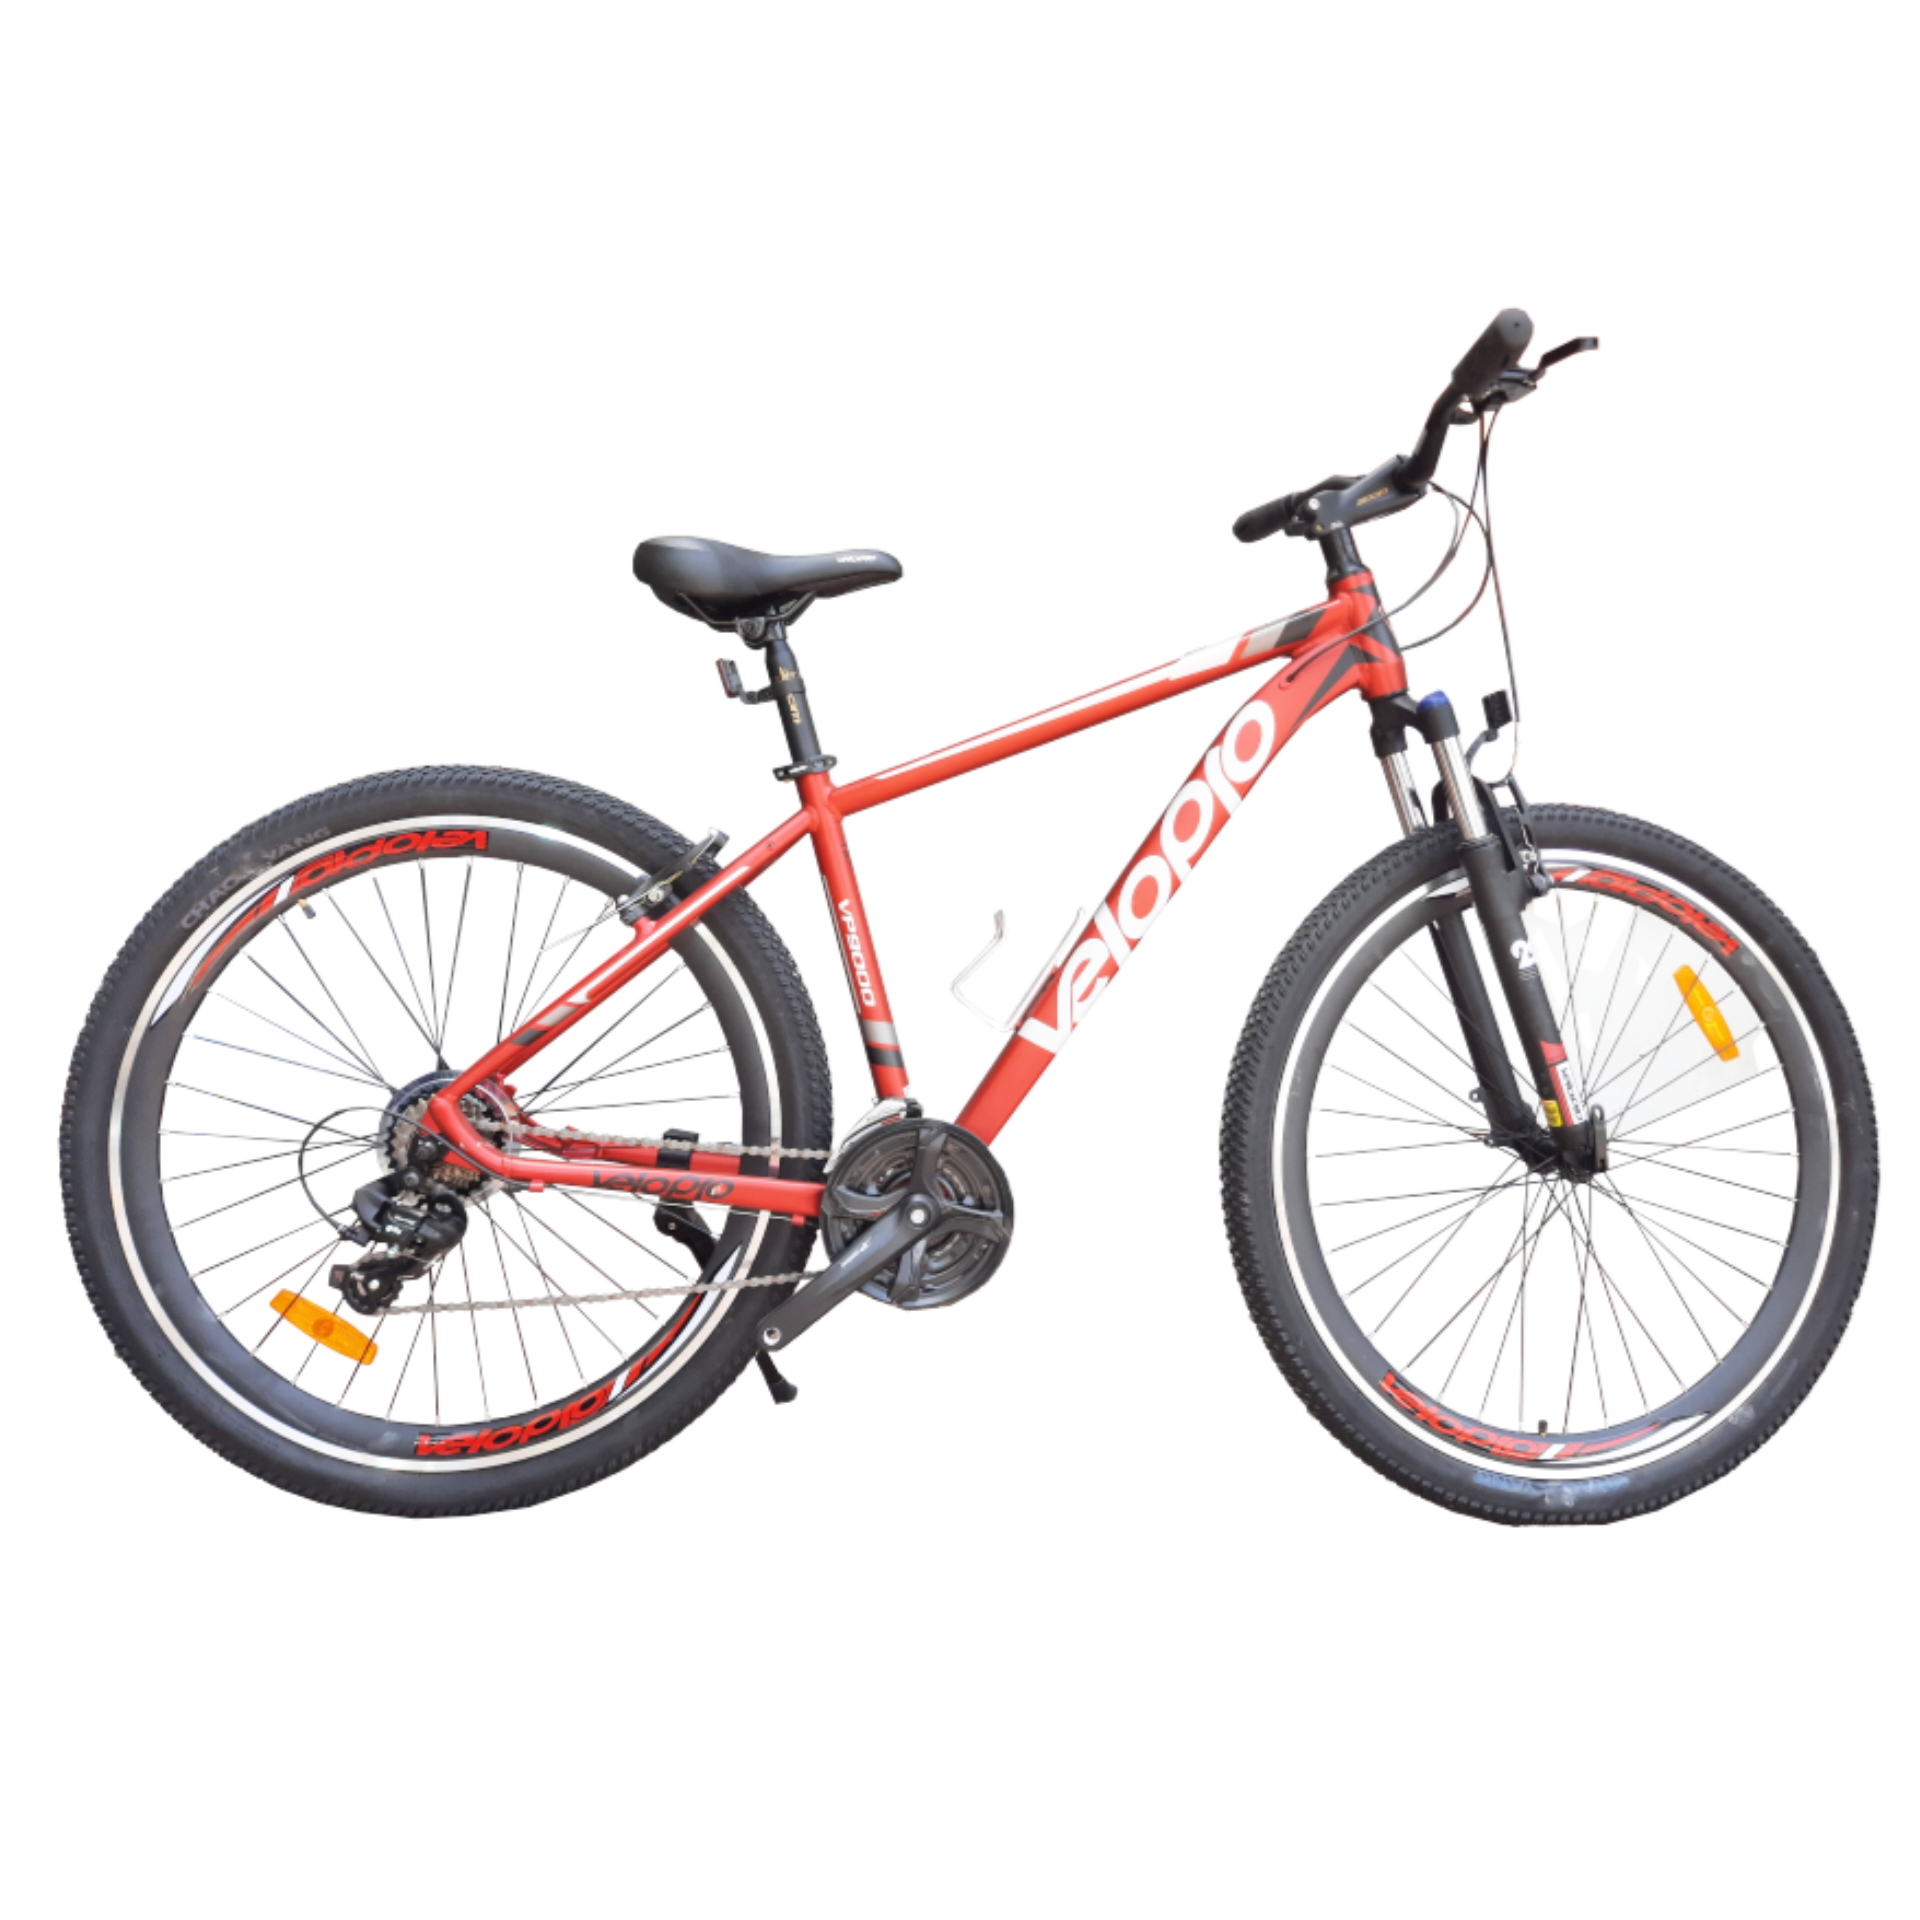 نکته خرید - قیمت روز دوچرخه کوهستان ولوپرو مدل Vp9000 سایز 29 خرید